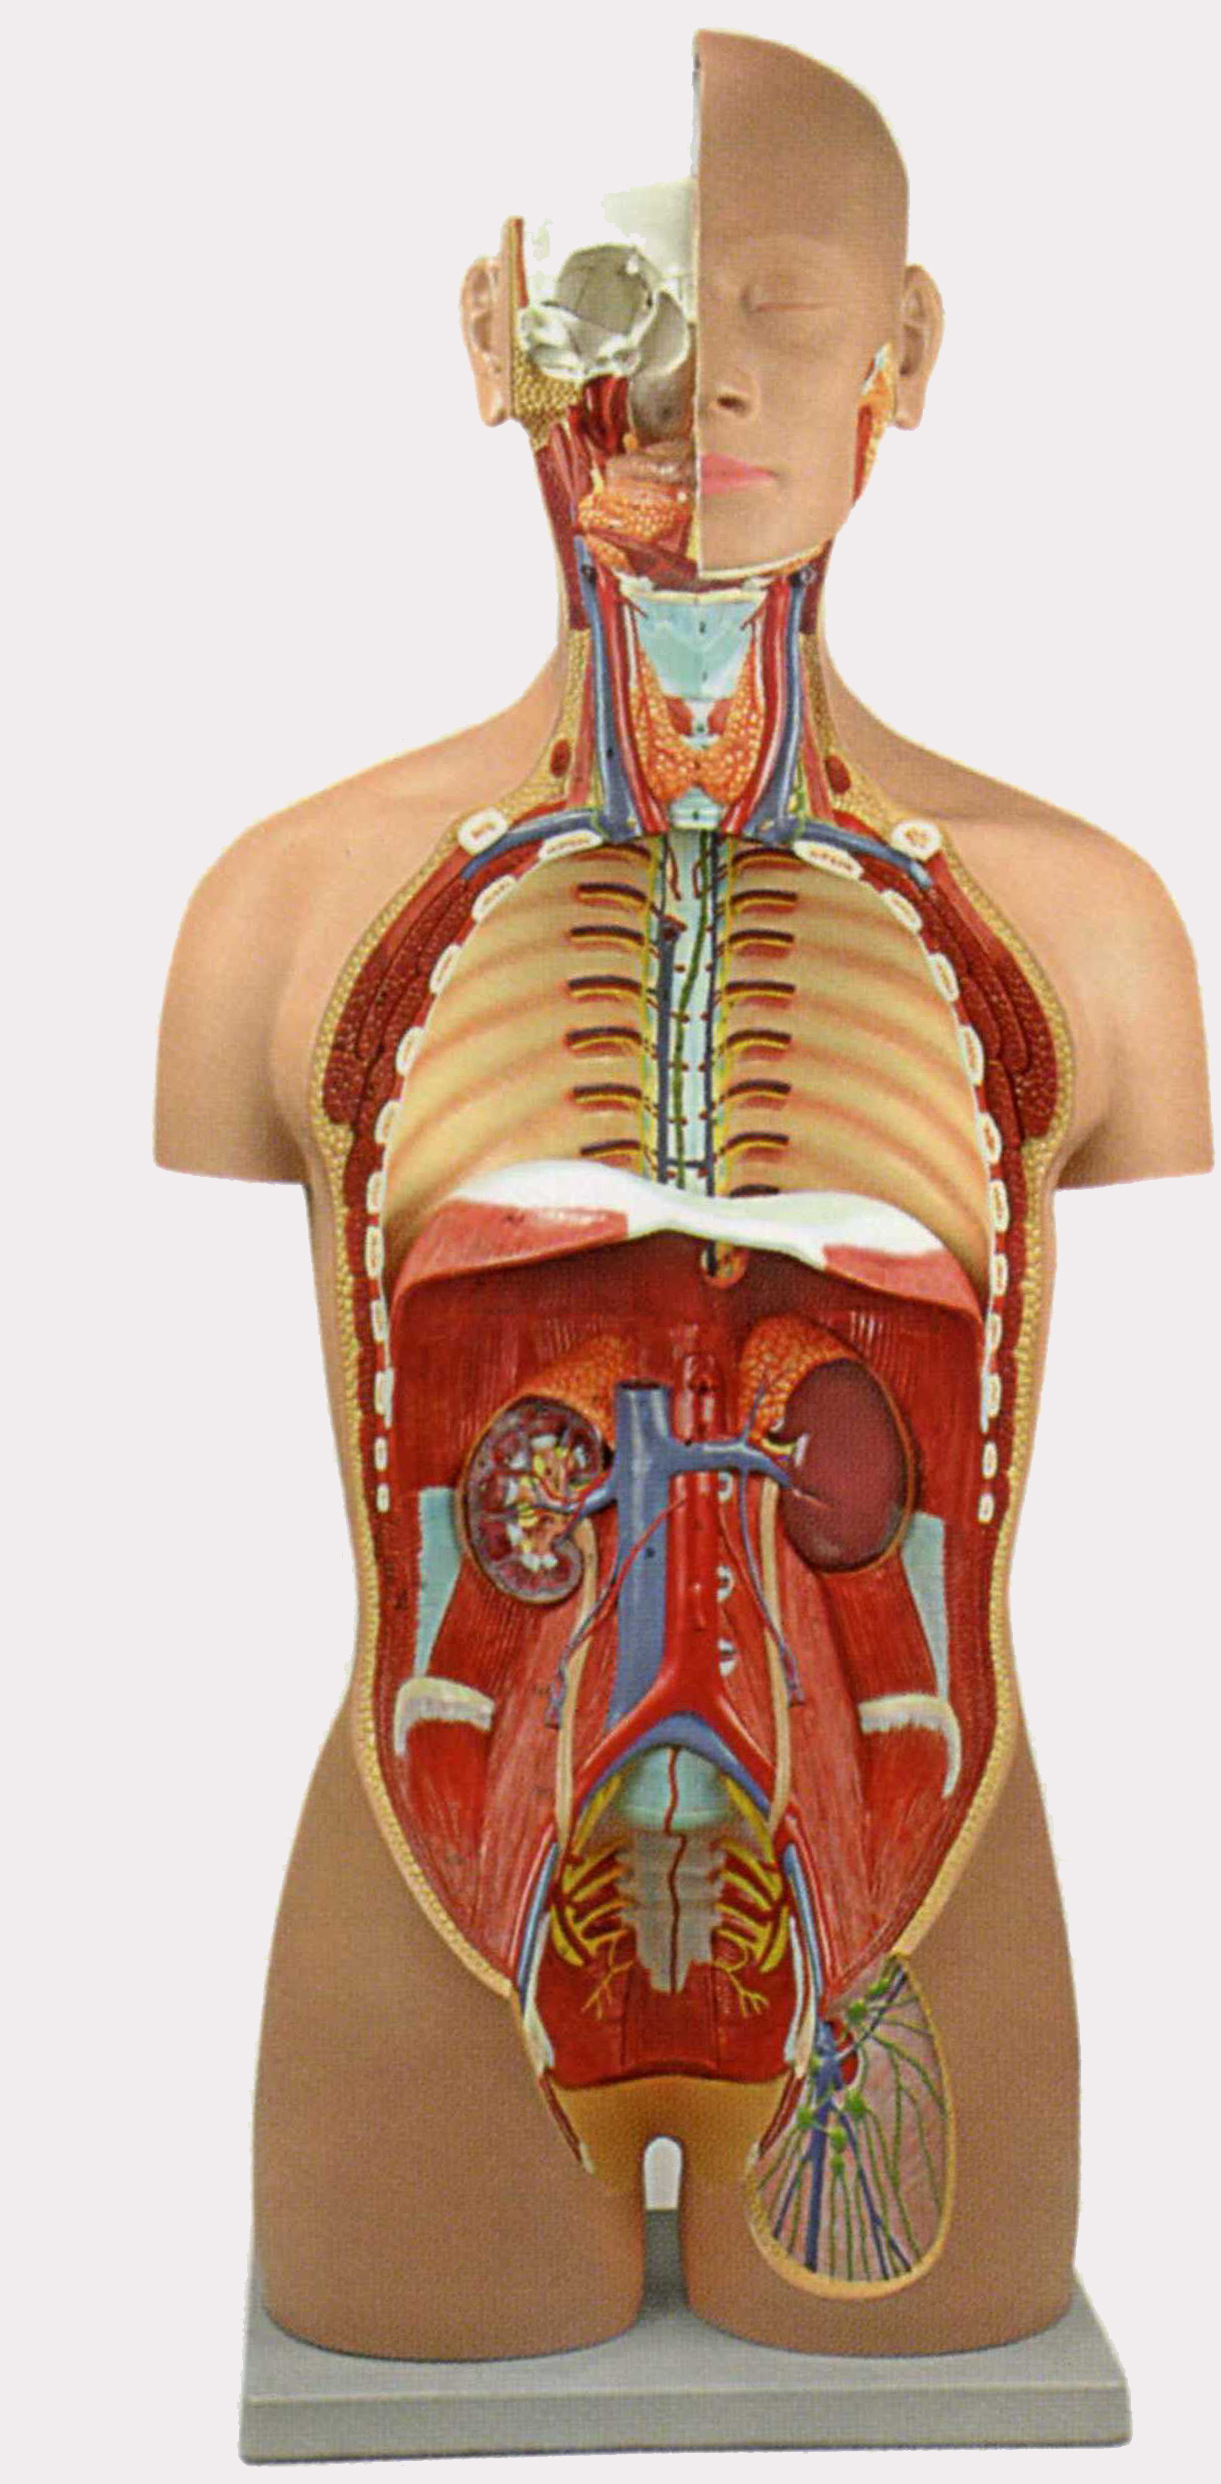 厂家直销 42cm无性躯干模型18件 人体内脏器官模型 人体解剖模型